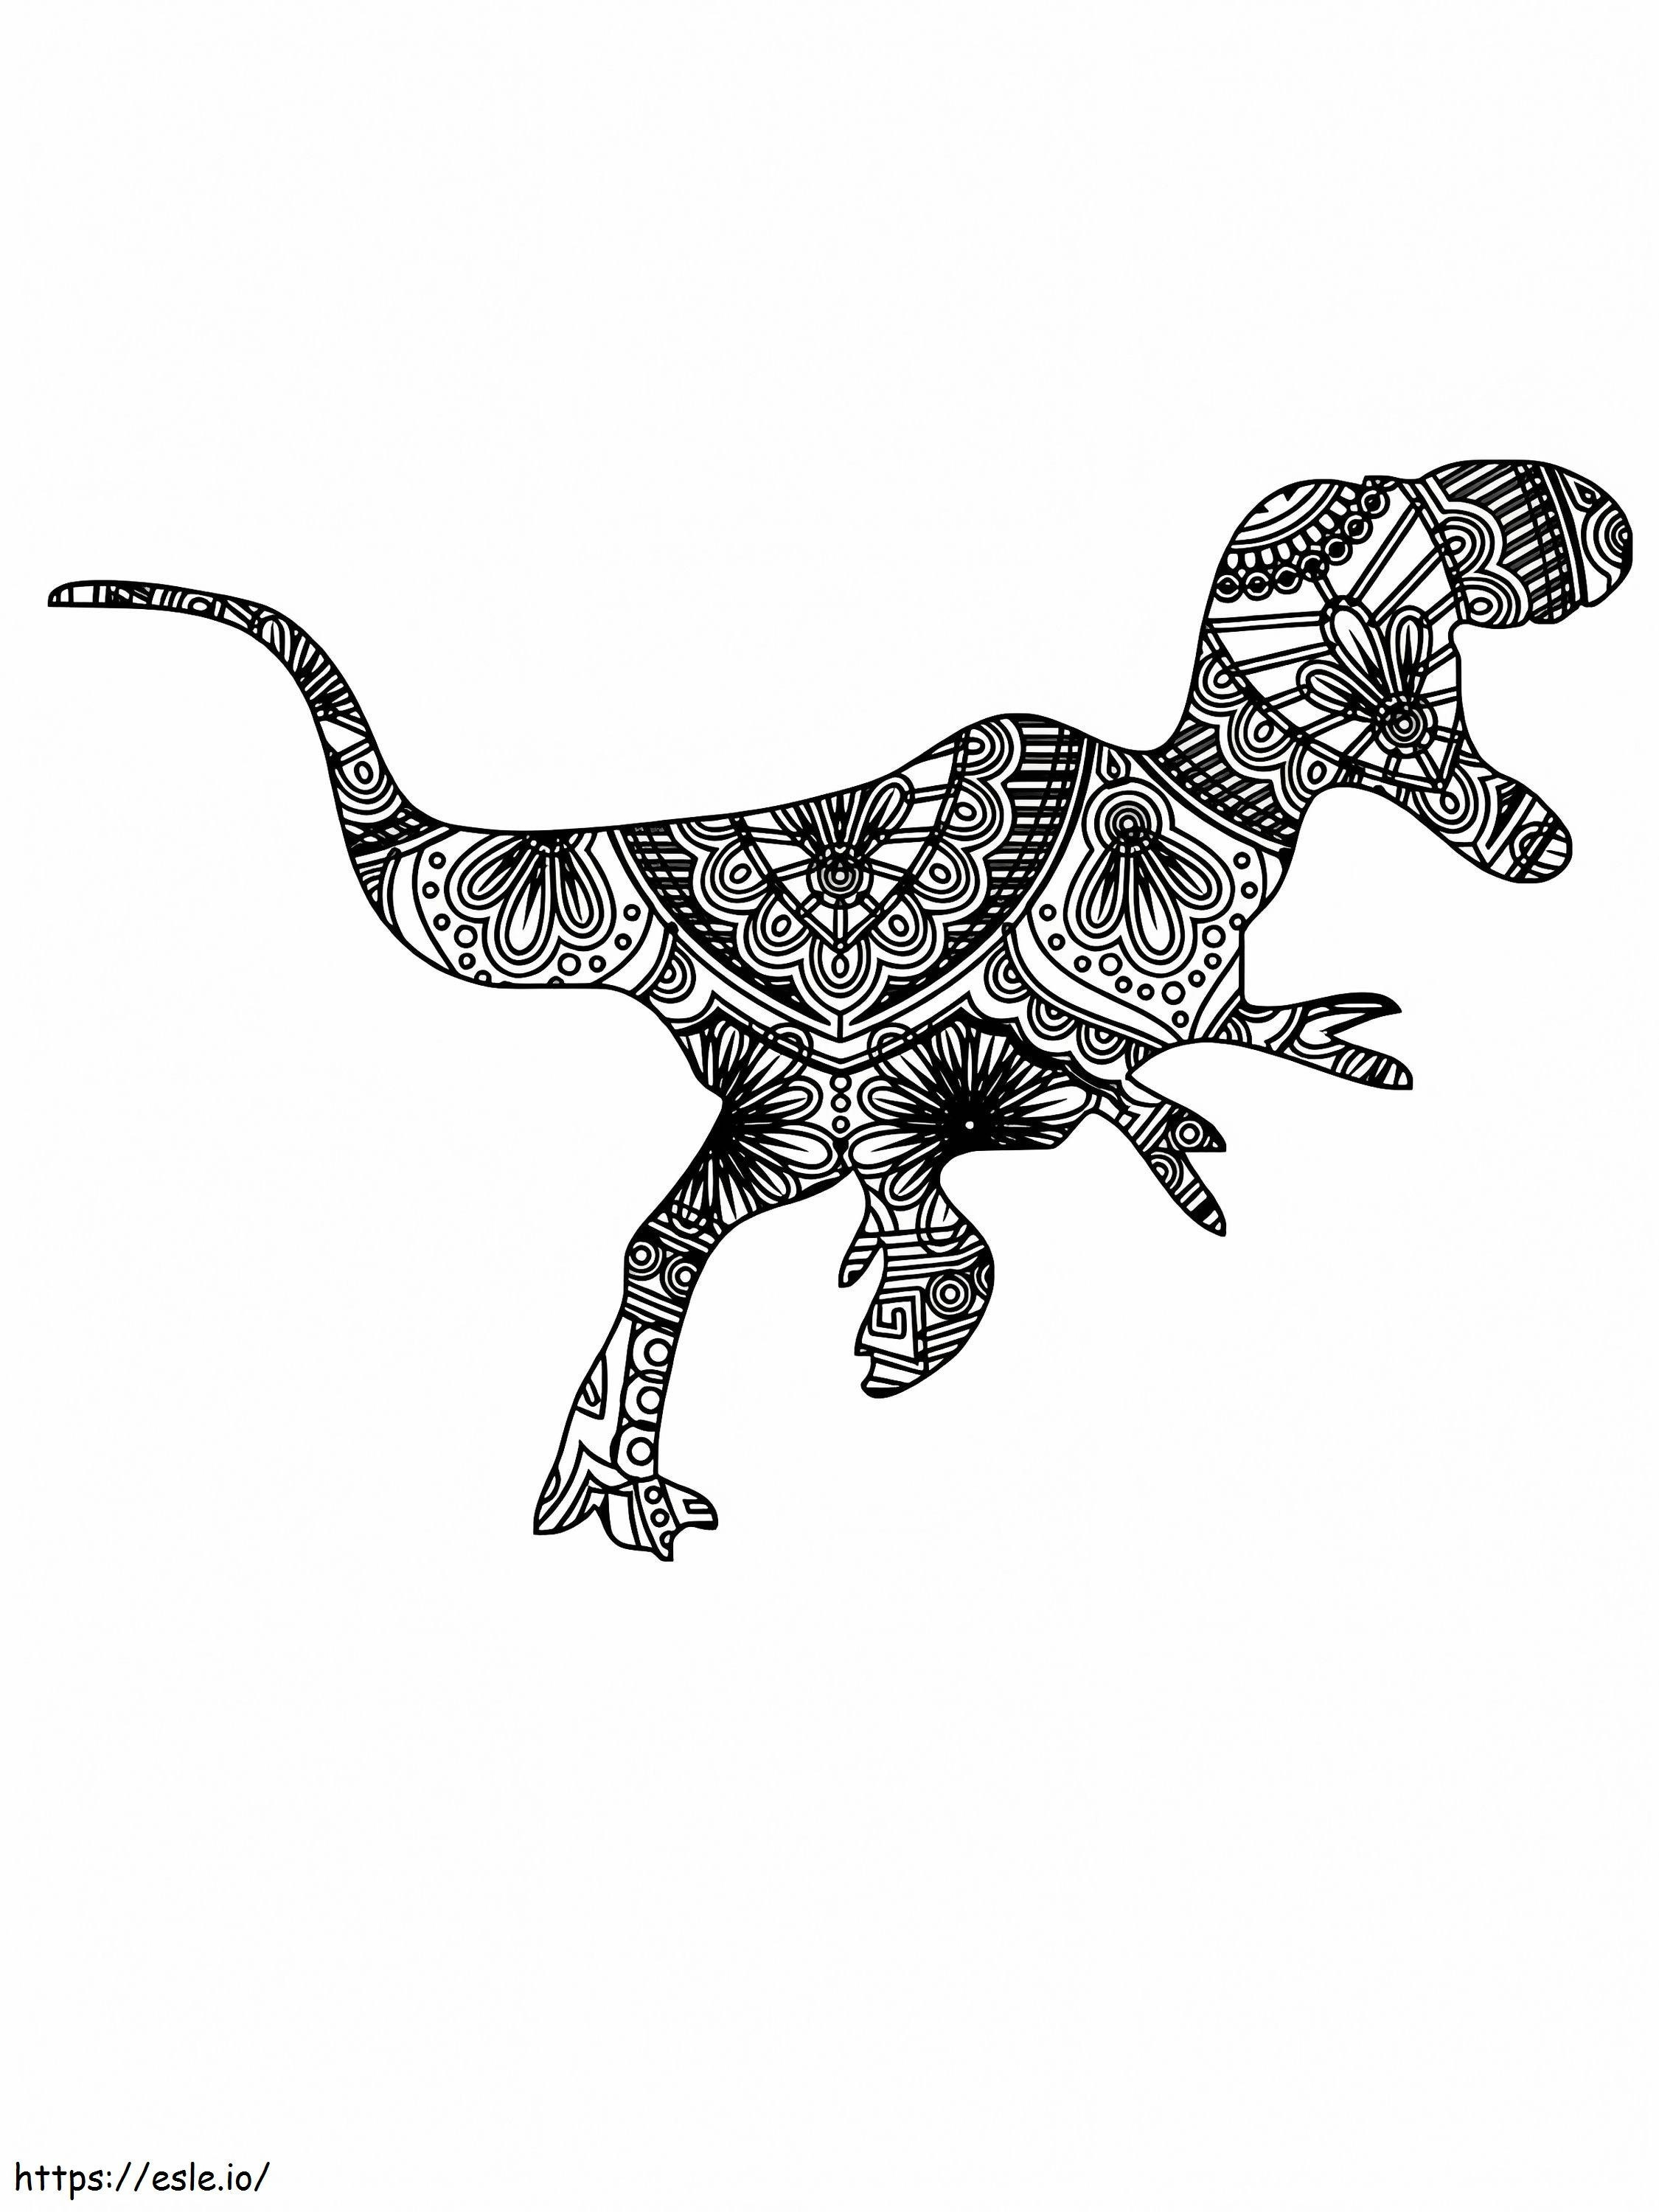 Free Vector Dinosaur Alebrijes coloring page